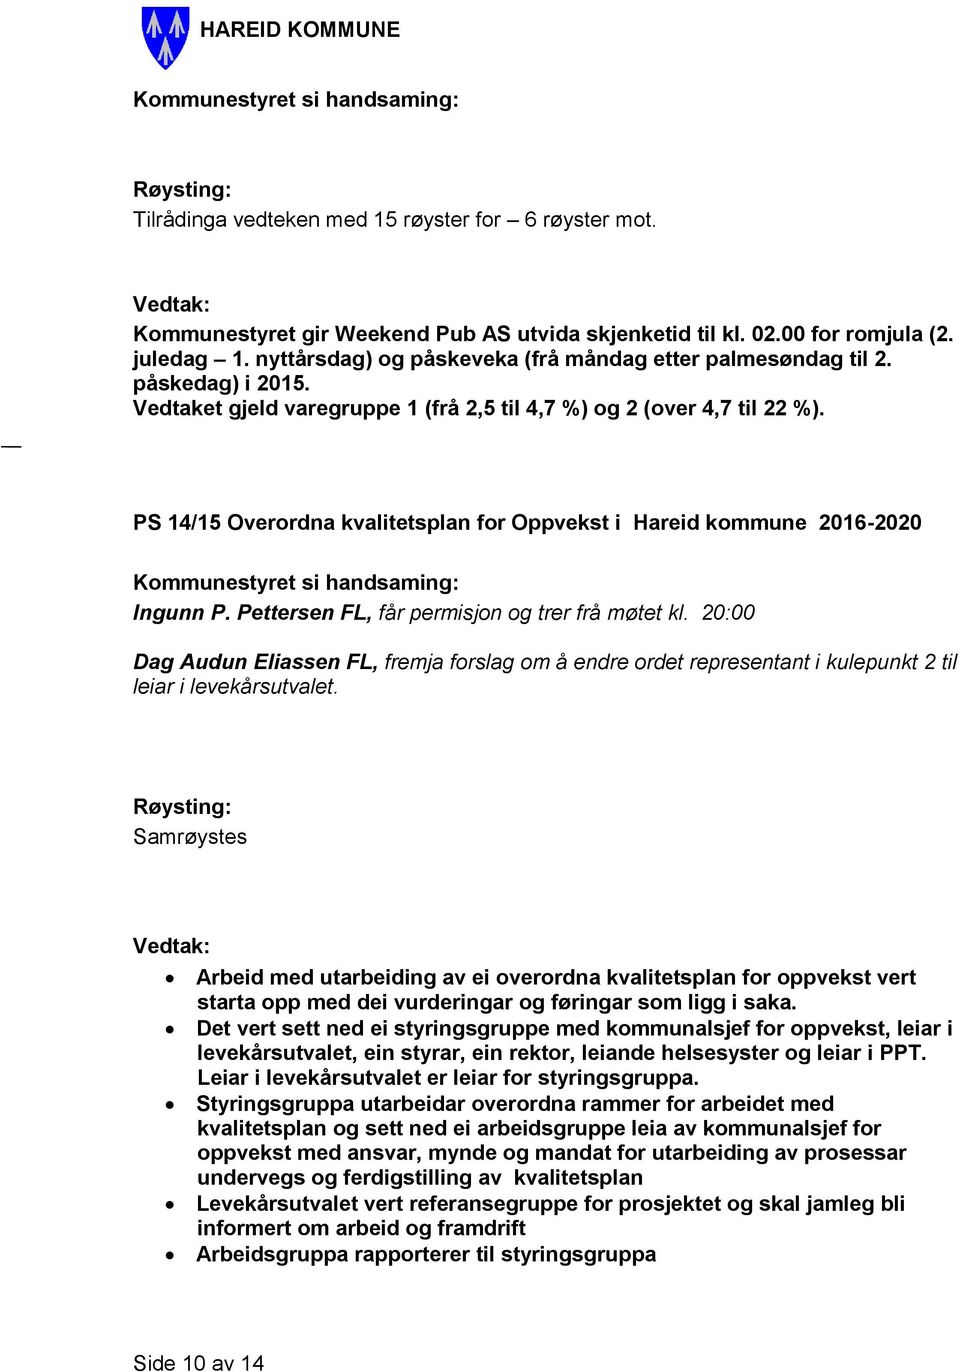 PS 14/15 Overordna kvalitetsplan for Oppvekst i Hareid kommune 2016-2020 Ingunn P. Pettersen FL, får permisjon og trer frå møtet kl.